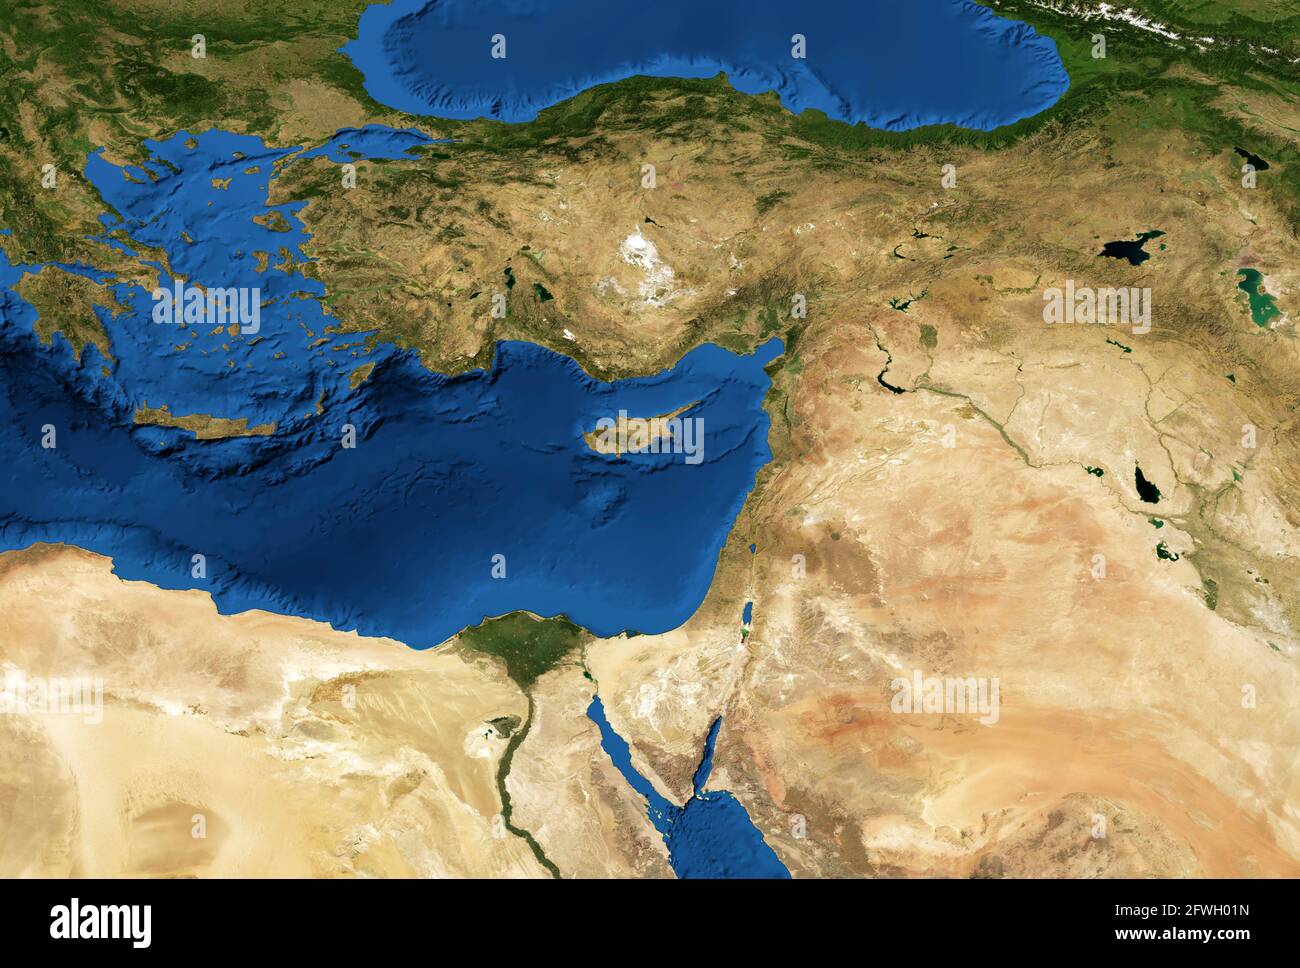 Nahost-Karte im globalen Satellitenfoto, flache Ansicht eines Teils der Welt aus dem All. Detaillierte physische Karte der Türkei, Syrien, Israel, Libanon, Ägypten, Jord Stockfoto